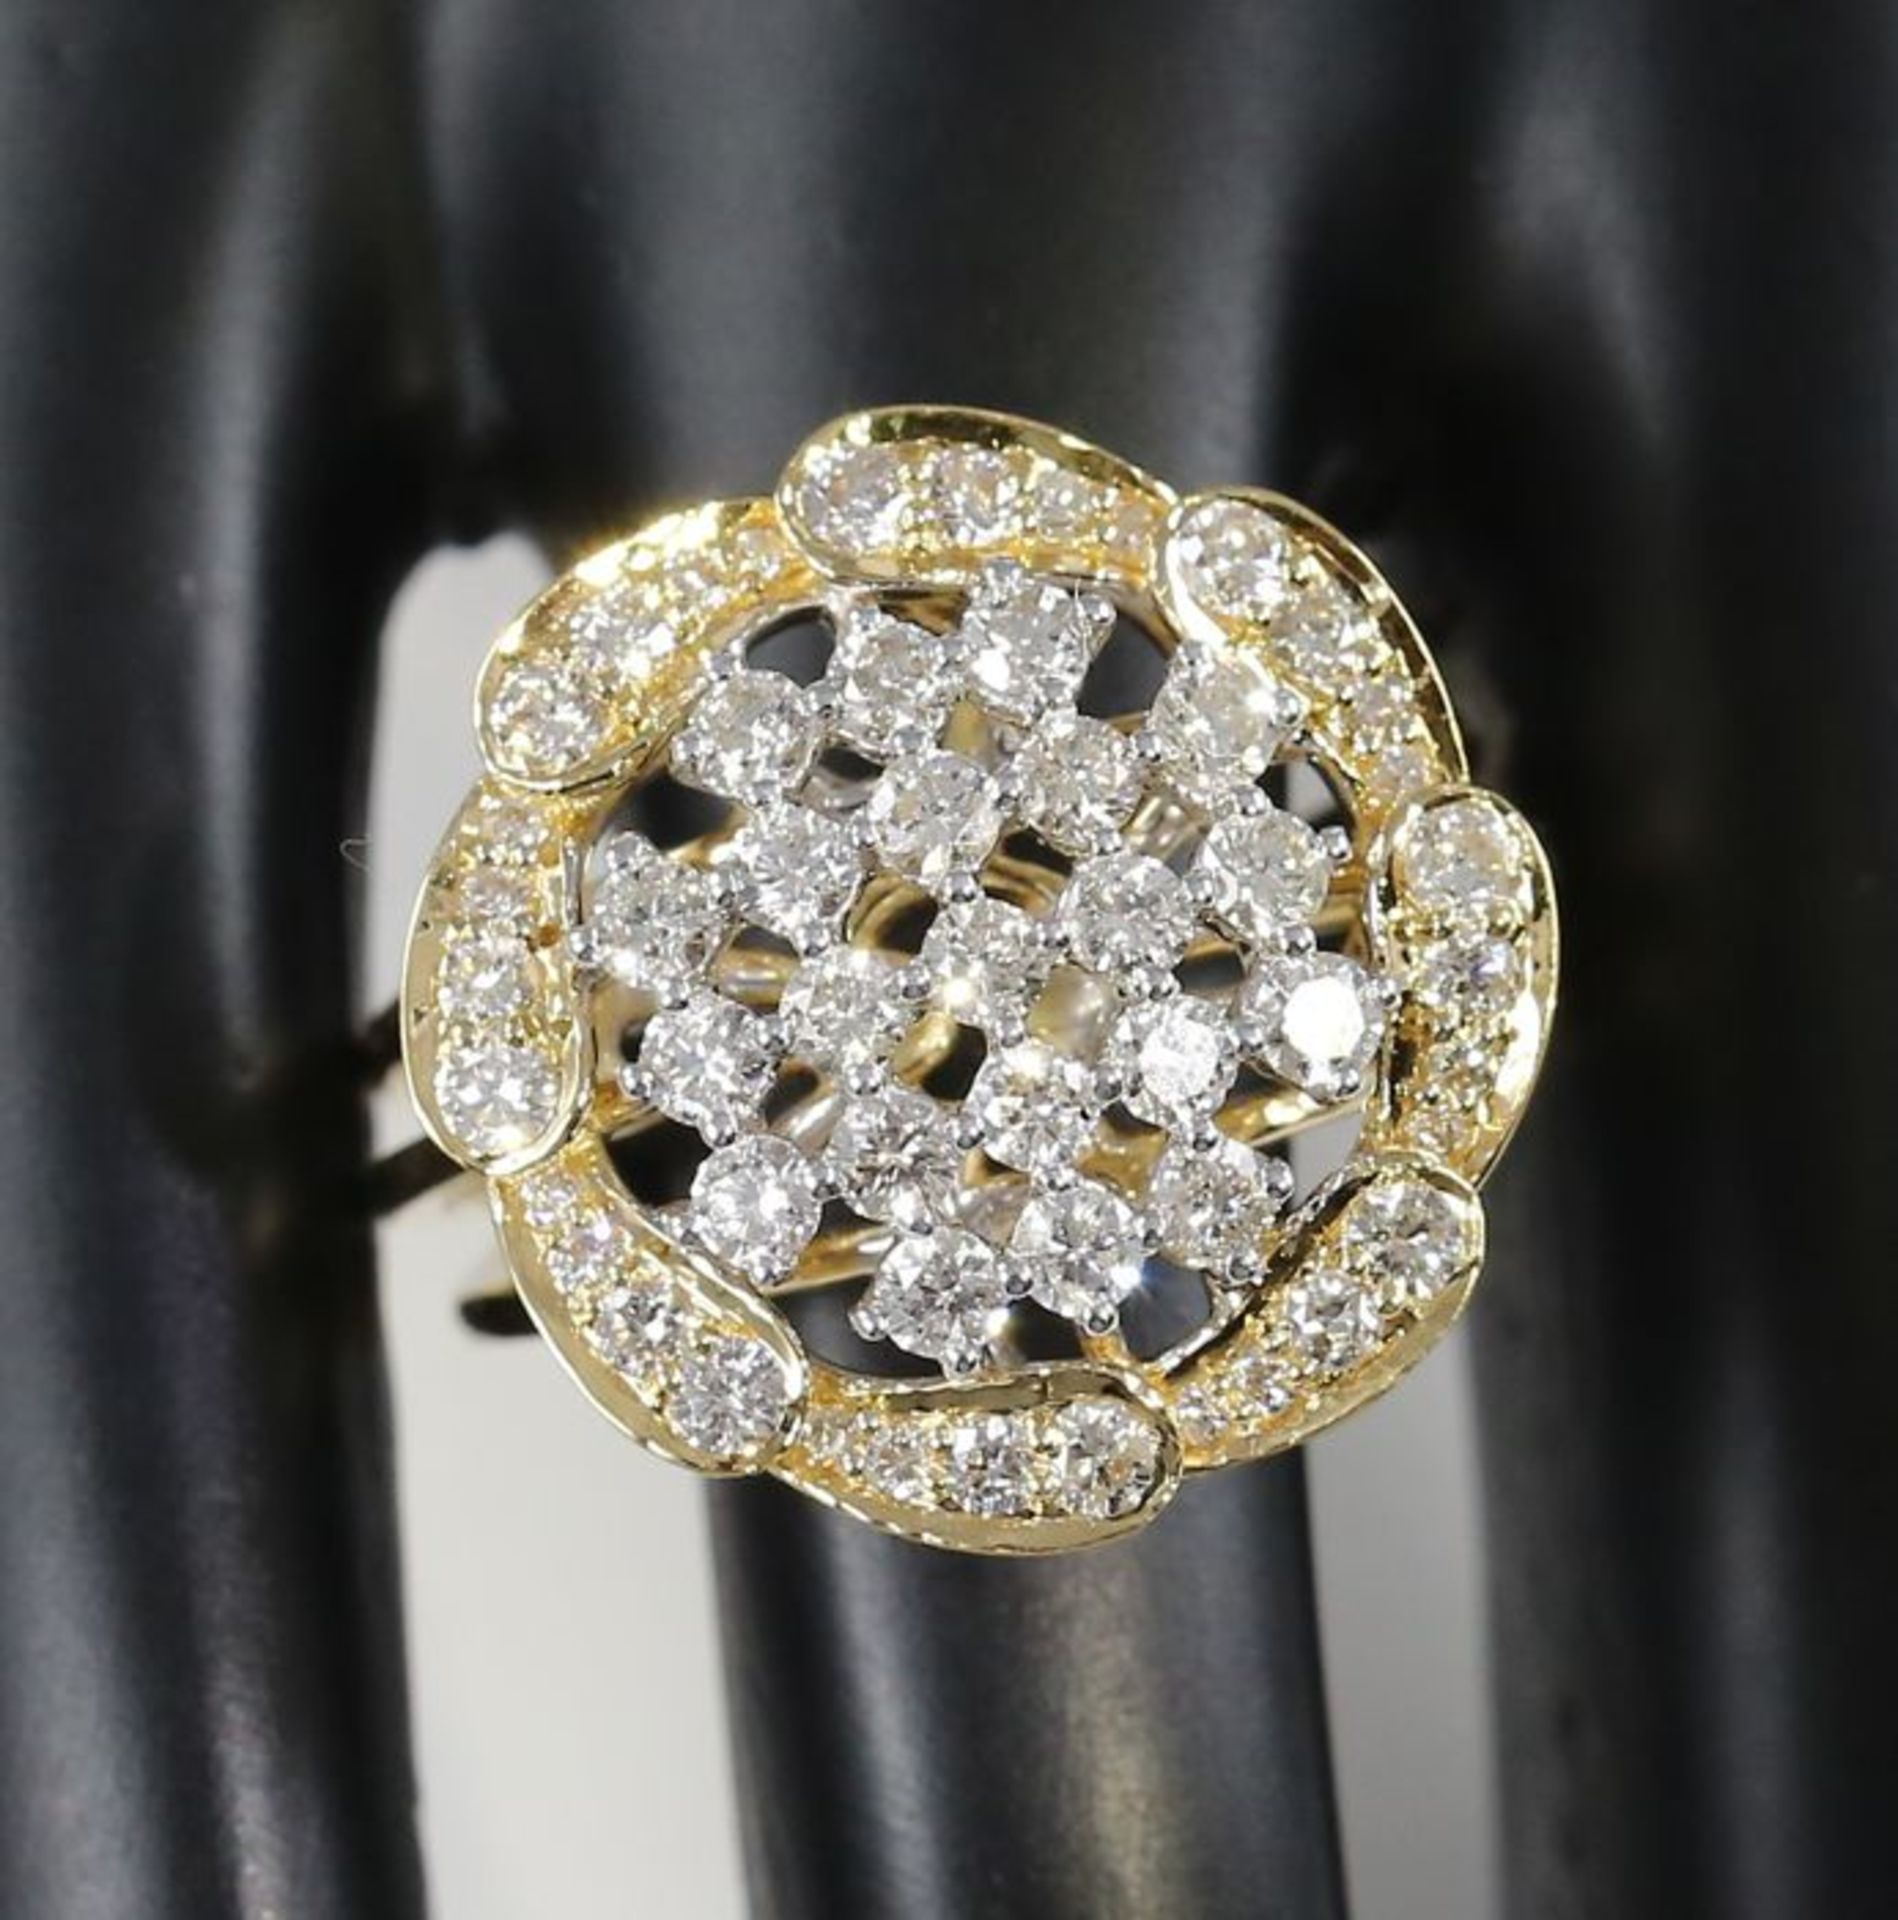 IGI Certified 18 K / 750 Yellow Gold Designer Diamond Ring - Image 4 of 9